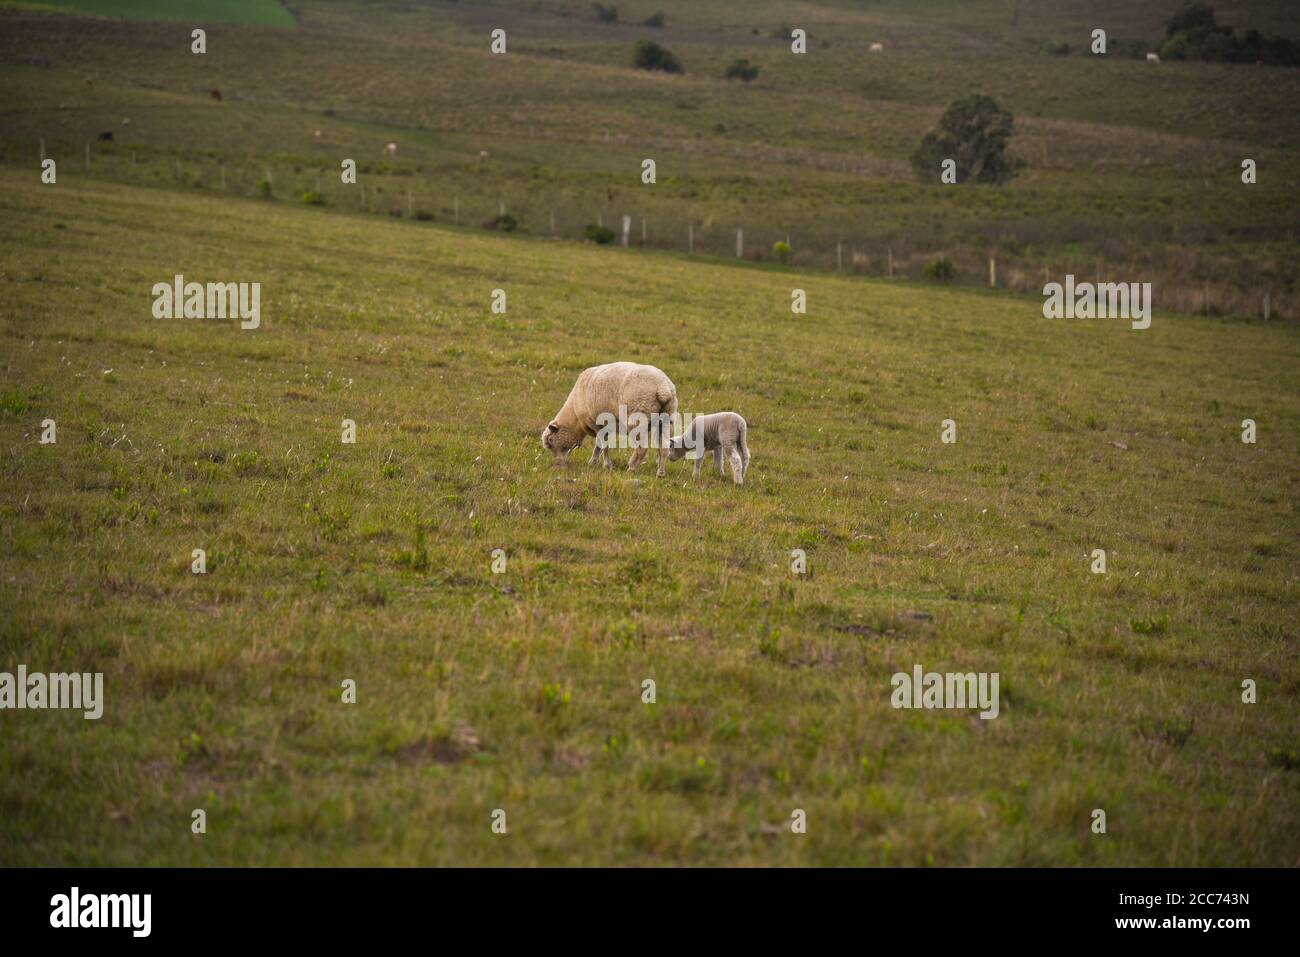 Corriedale Schafe. Corriedale ist ein Mehrzweck-Schaf (Wolle und Fleisch).  Es hat eine große Größe und gute Schlachtkörperqualität. Ländliche  Landschaft. Pampa biome regio Stockfotografie - Alamy